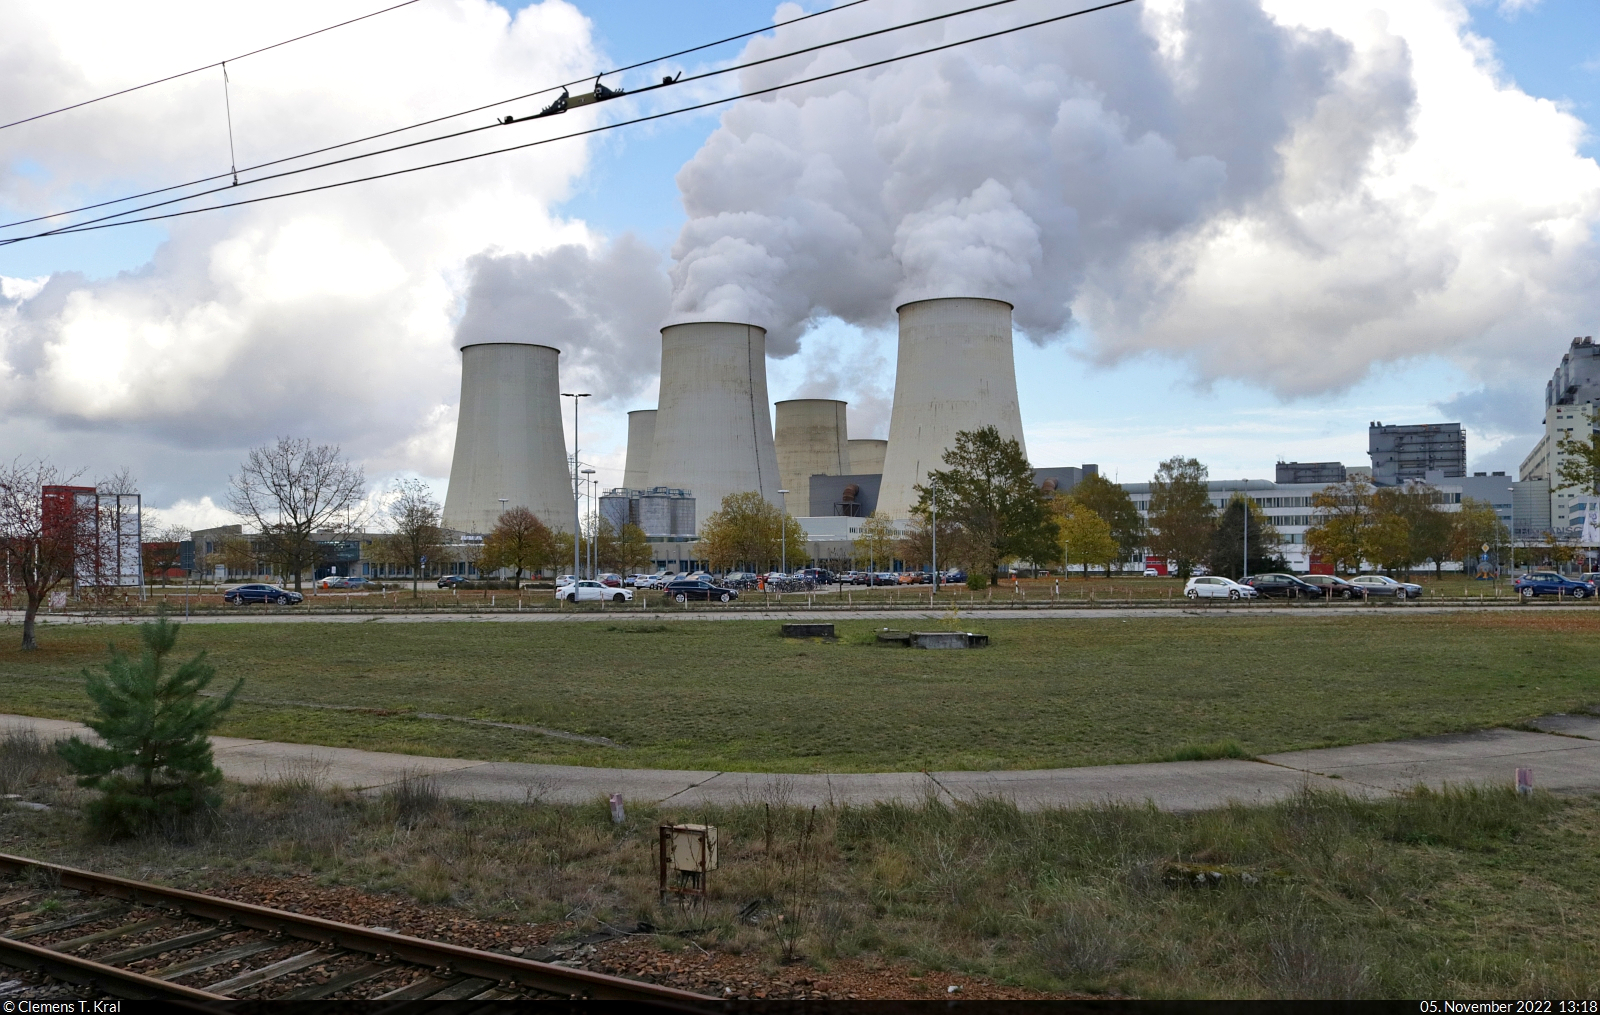 Das Braunkohle-Kraftwerk Jänschwalde im Lausitzer Revier, fotografiert vom Werksbahnhof Peitz Ost.

🕓 5.11.2022 | 13:18 Uhr